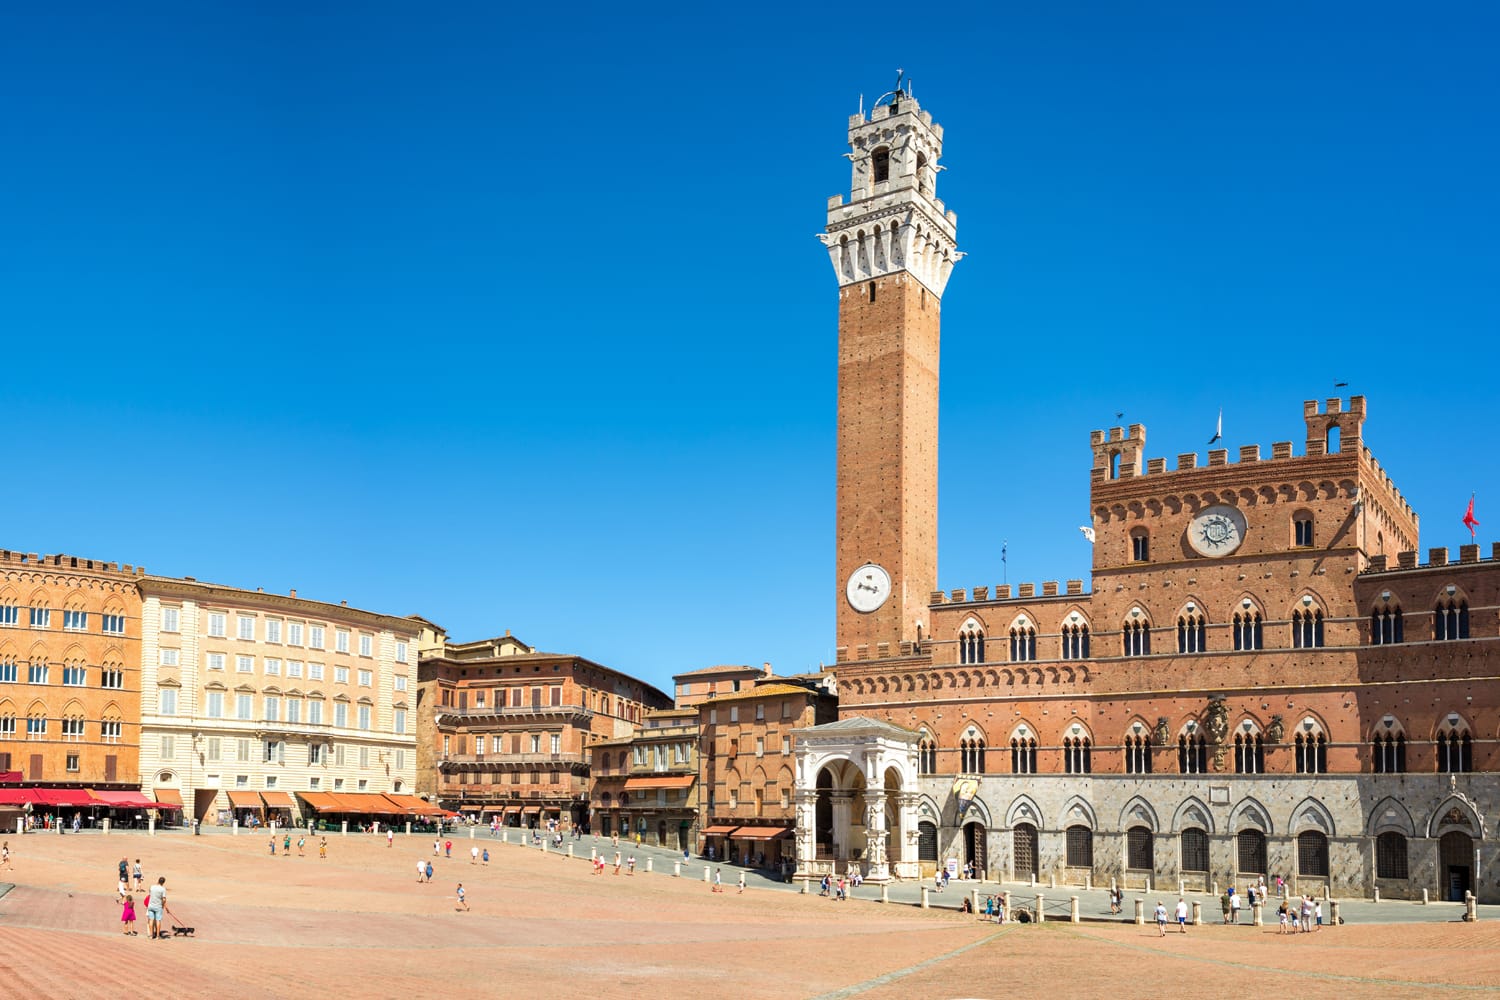 Panorama de la Piazza del Campo (plaza de Campo), el Palacio Público y la Torre del Mangia (torre de Mangia) en Siena, Toscana, Italia